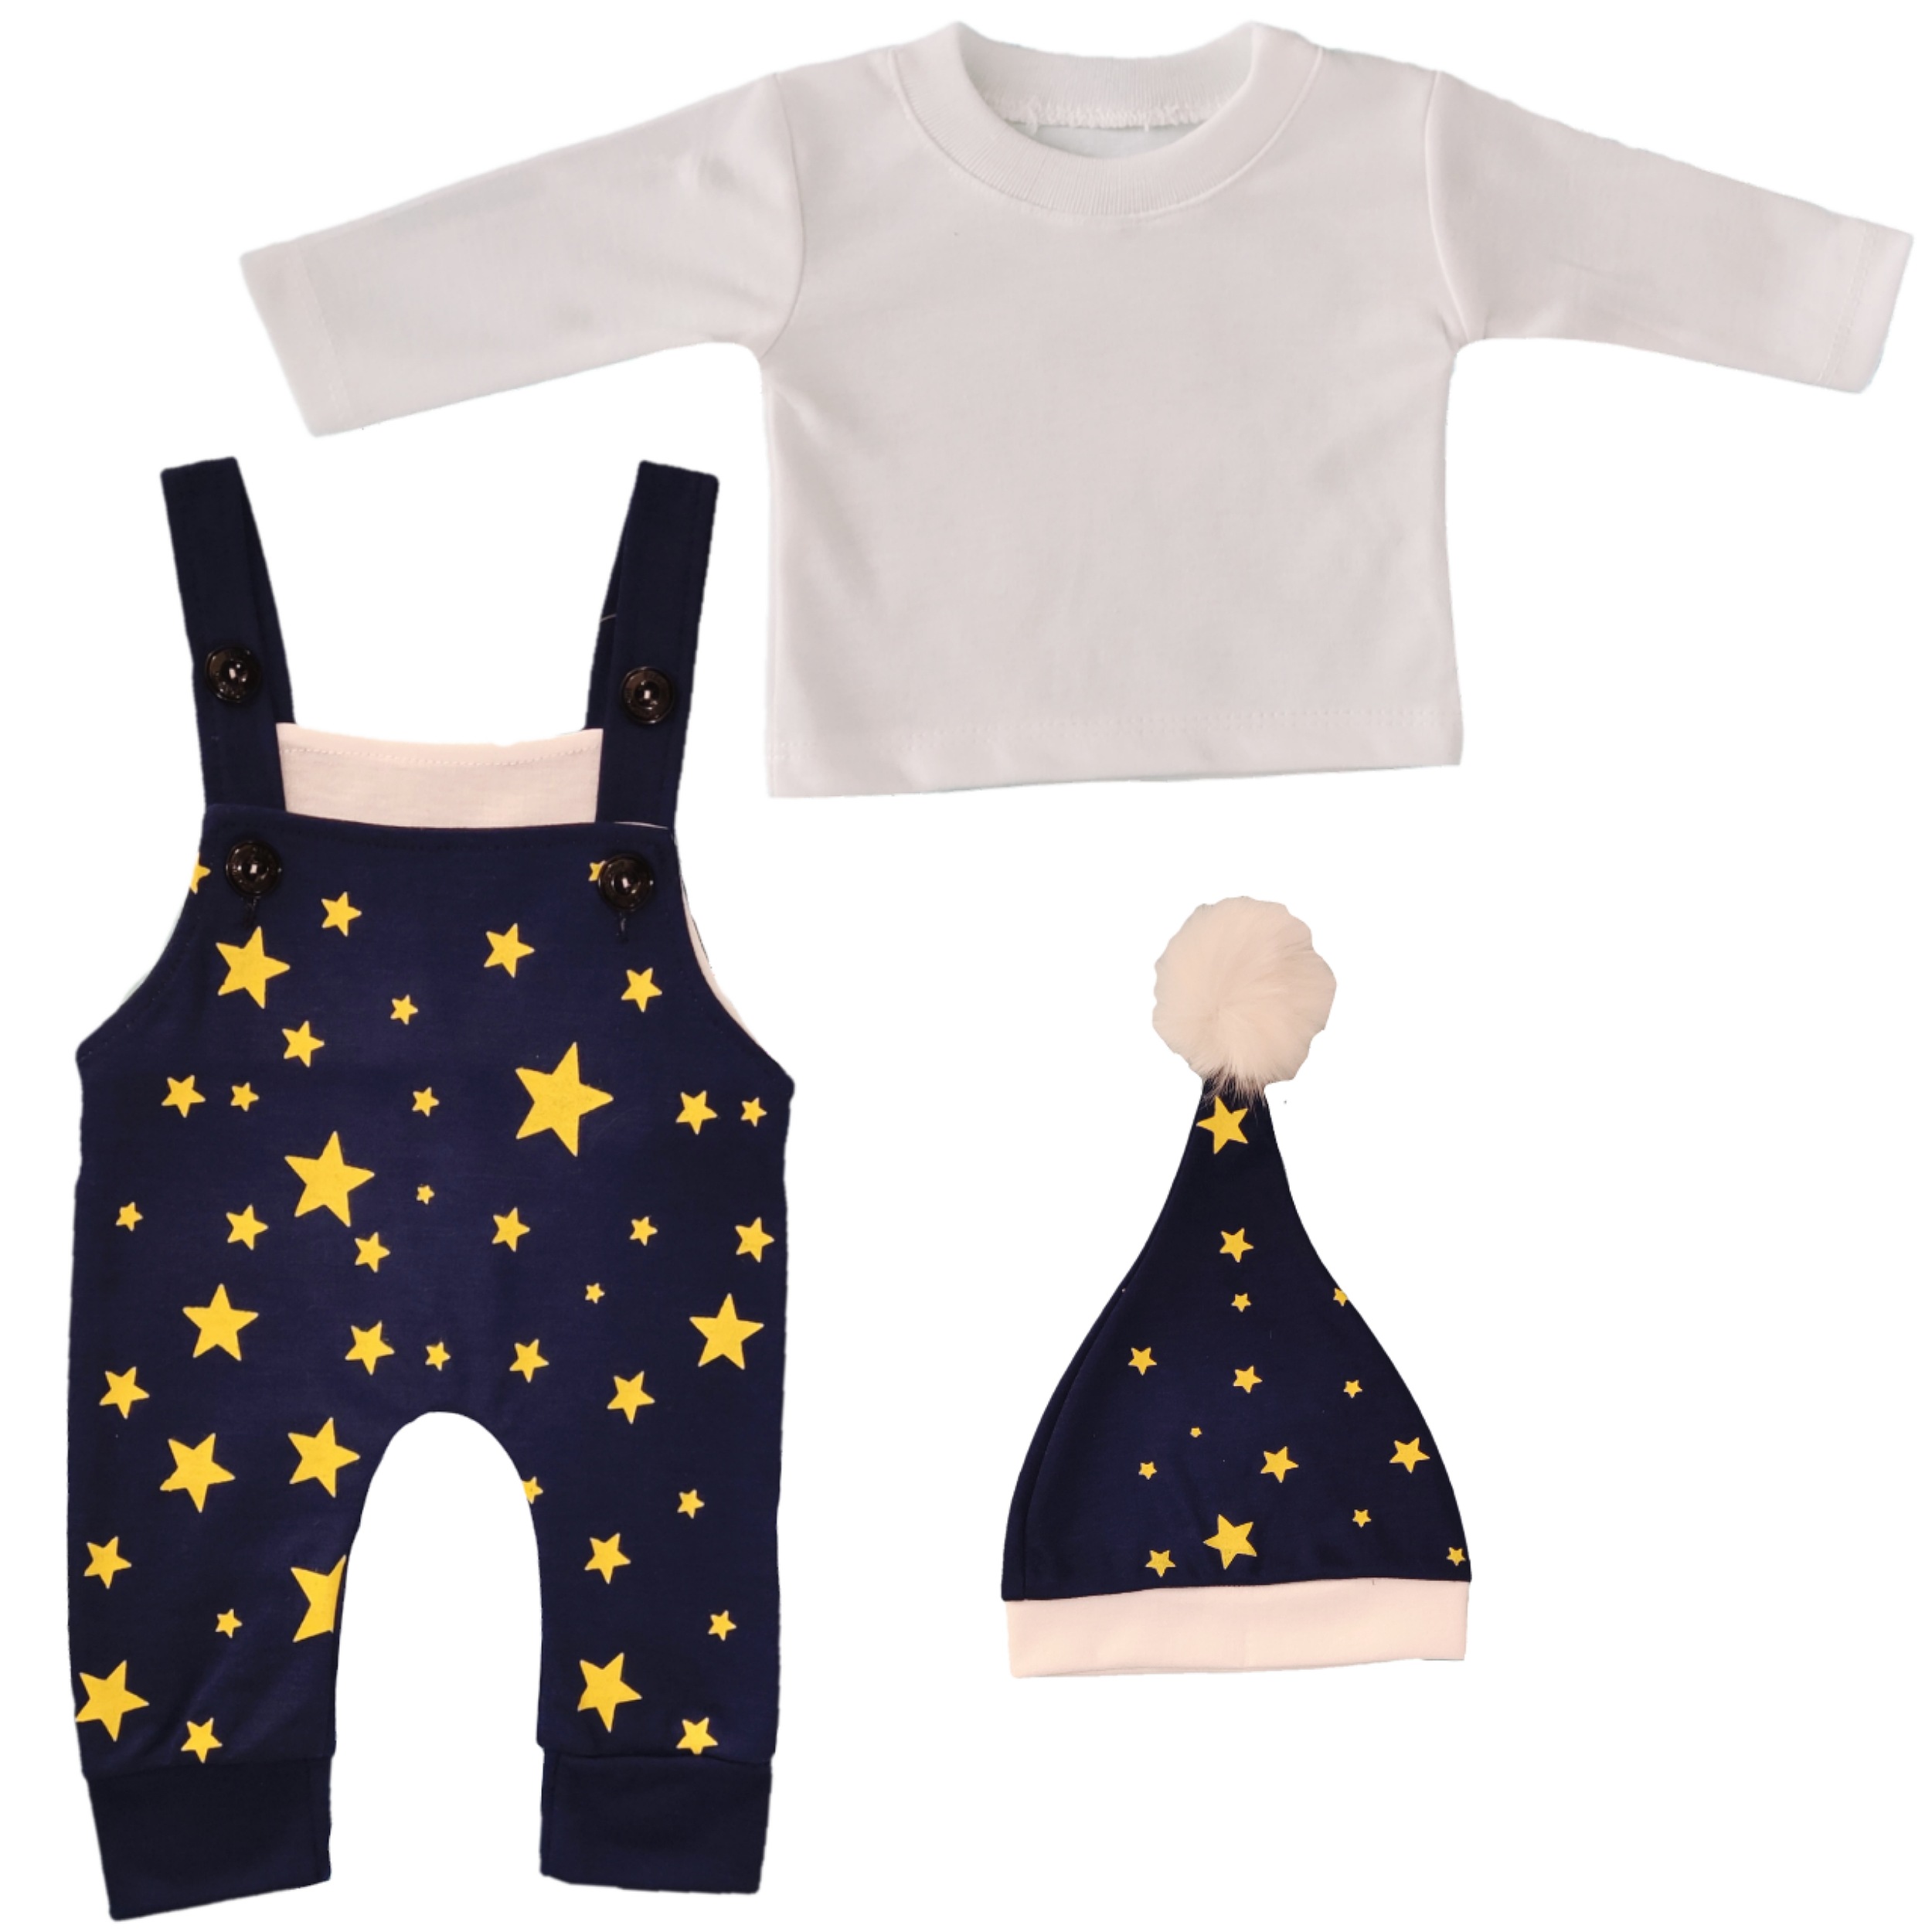 ست 3 تکه لباس نوزادی مدل ستاره کد 17